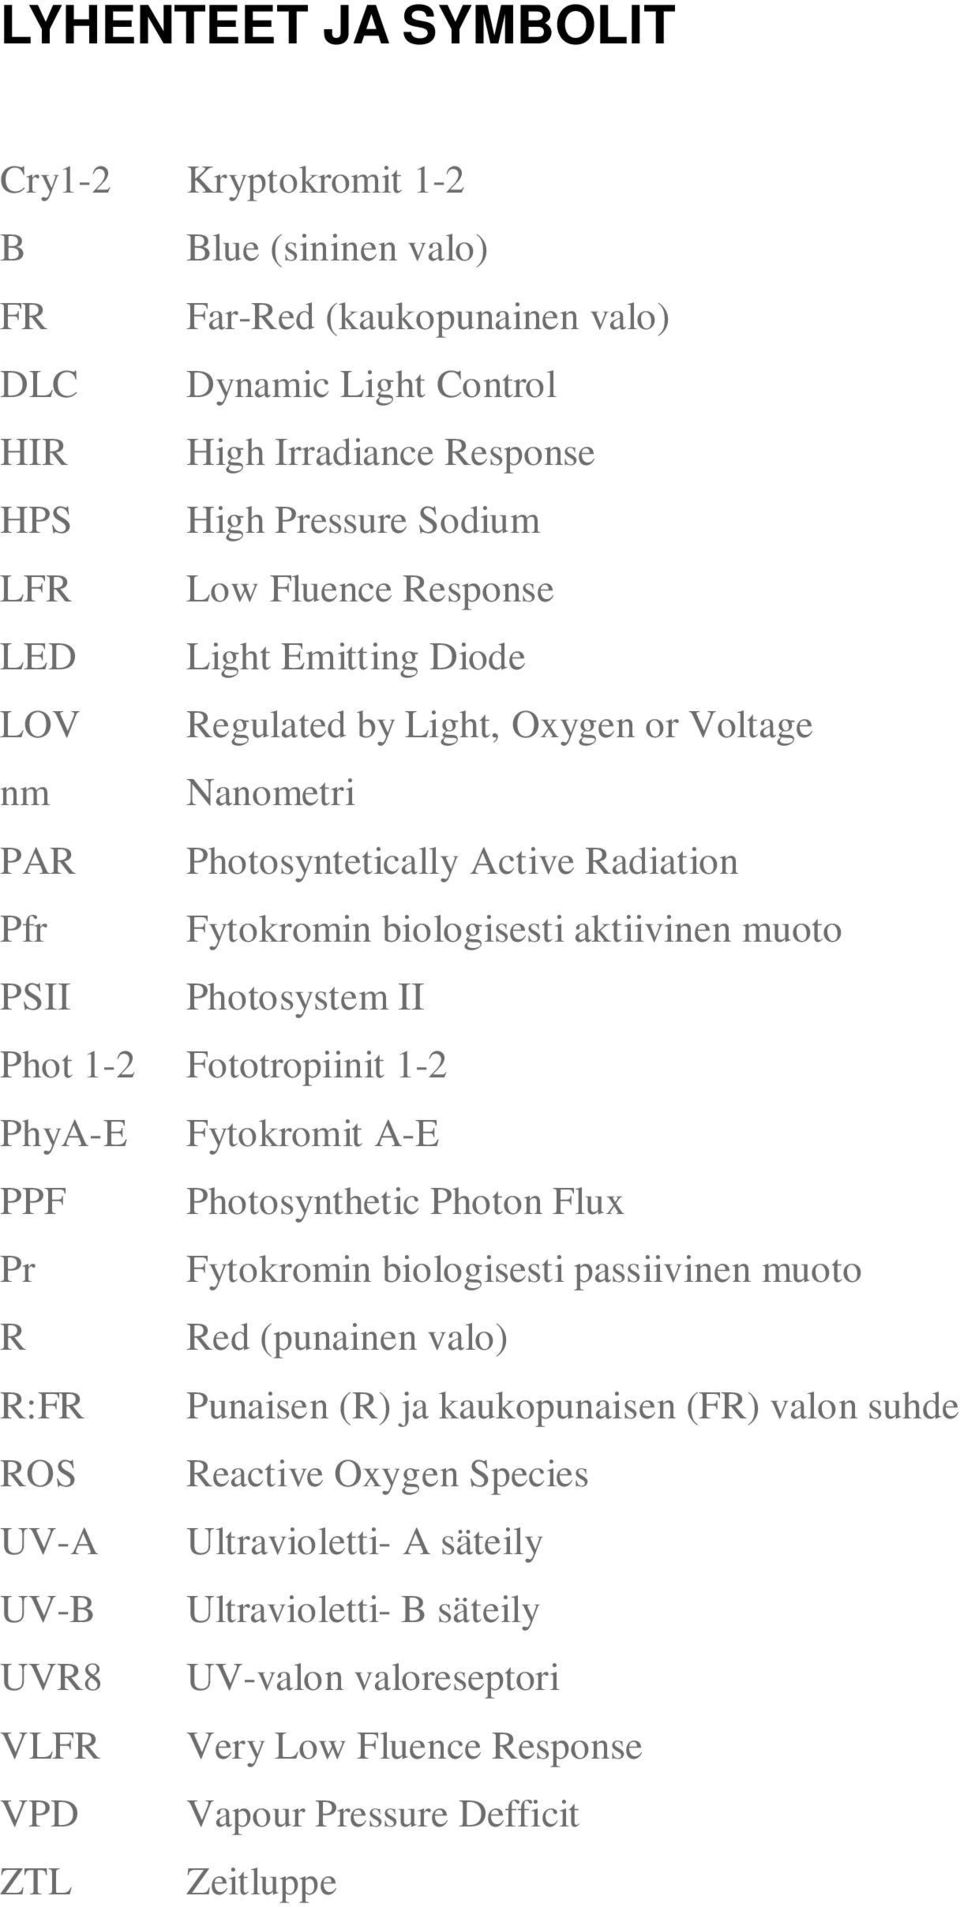 Photosystem II Phot 1-2 Fototropiinit 1-2 PhyA-E Fytokromit A-E PPF Photosynthetic Photon Flux Pr Fytokromin biologisesti passiivinen muoto R Red (punainen valo) R:FR Punaisen (R) ja